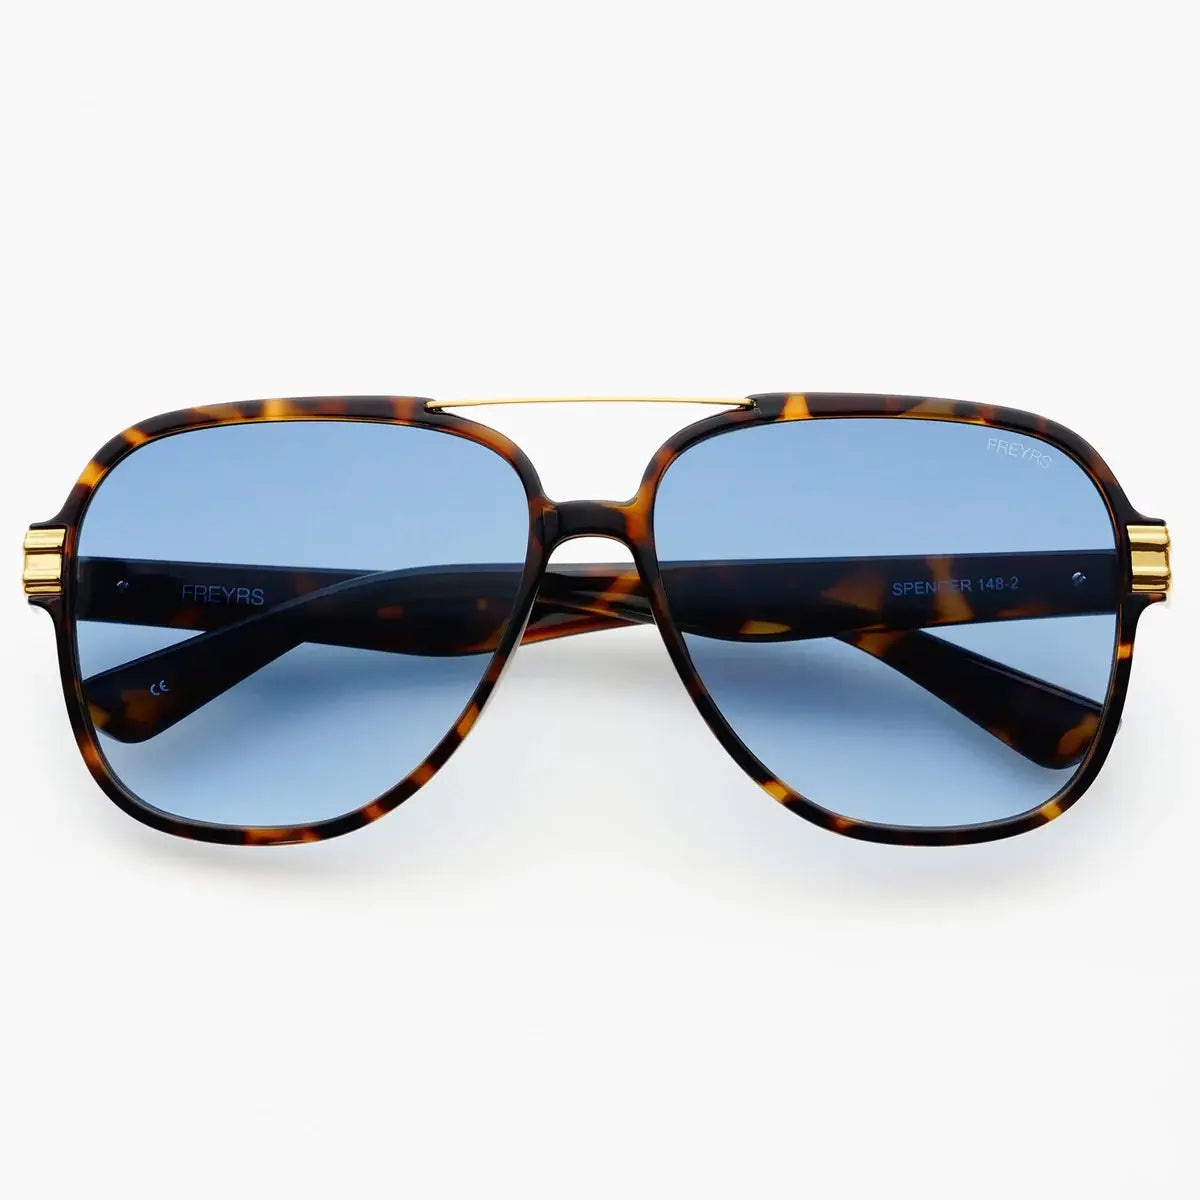 Spencer Tortoise Blue Sunglasses